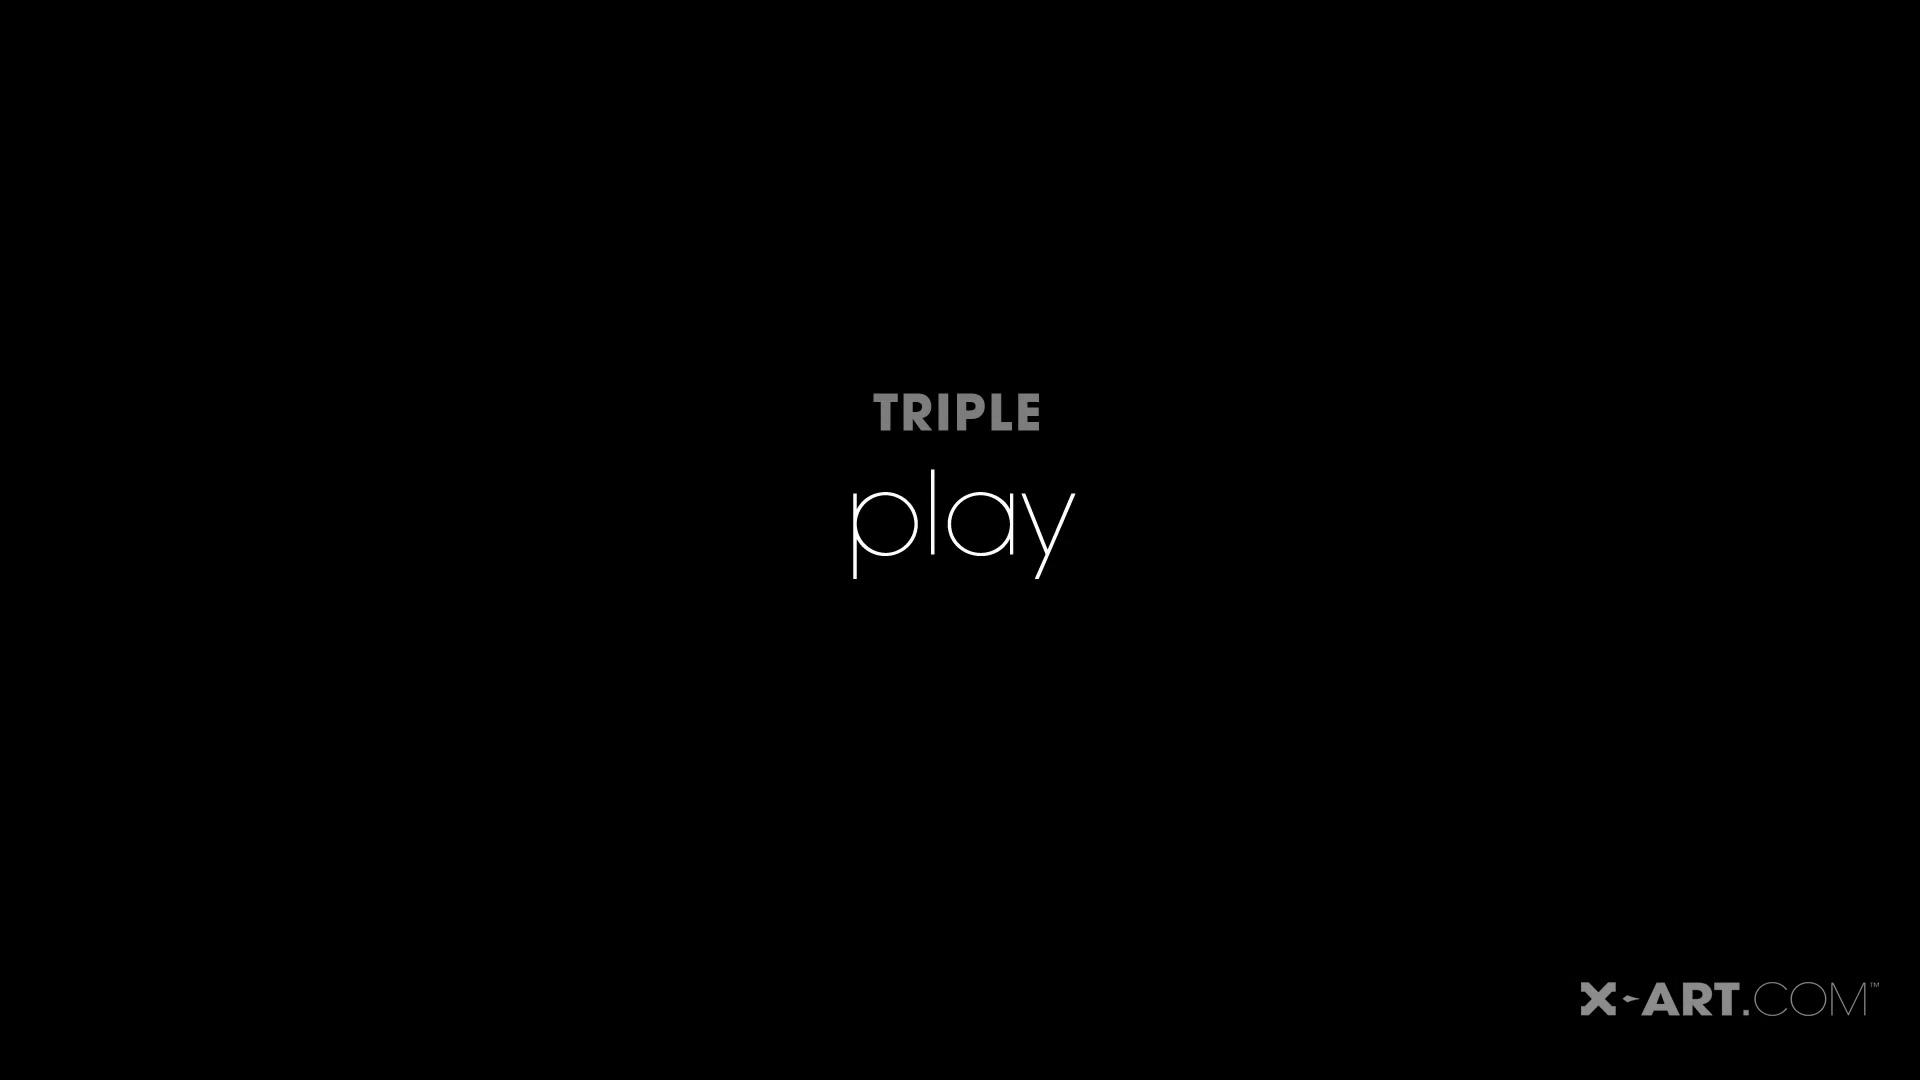 X-Art - Triple Play (Kenna, Alex Grey)